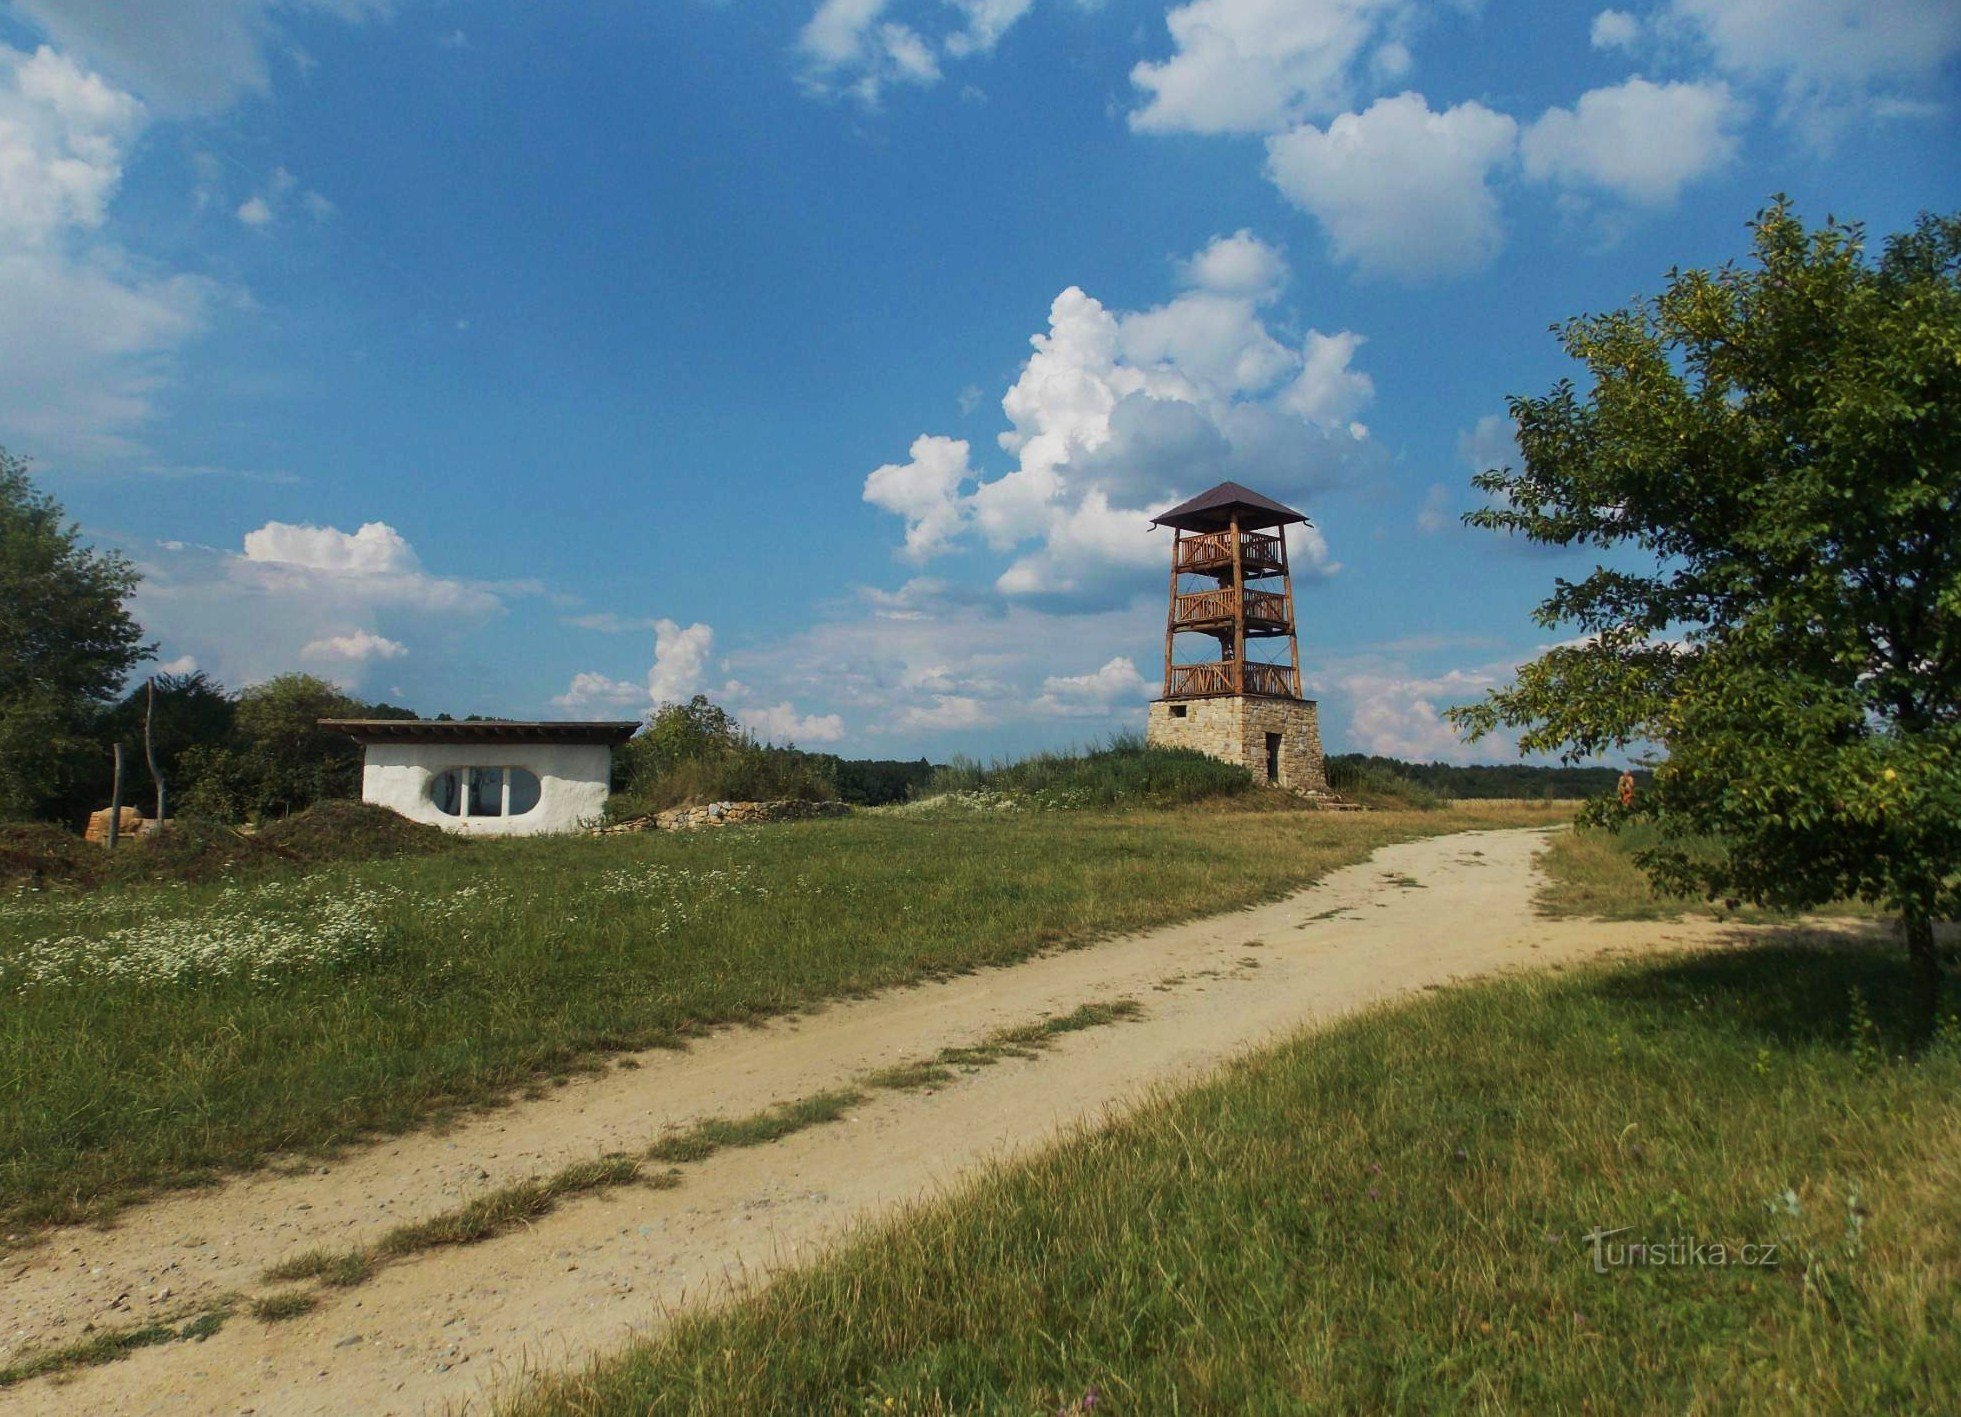 New observation tower in Hostišová near Zlín